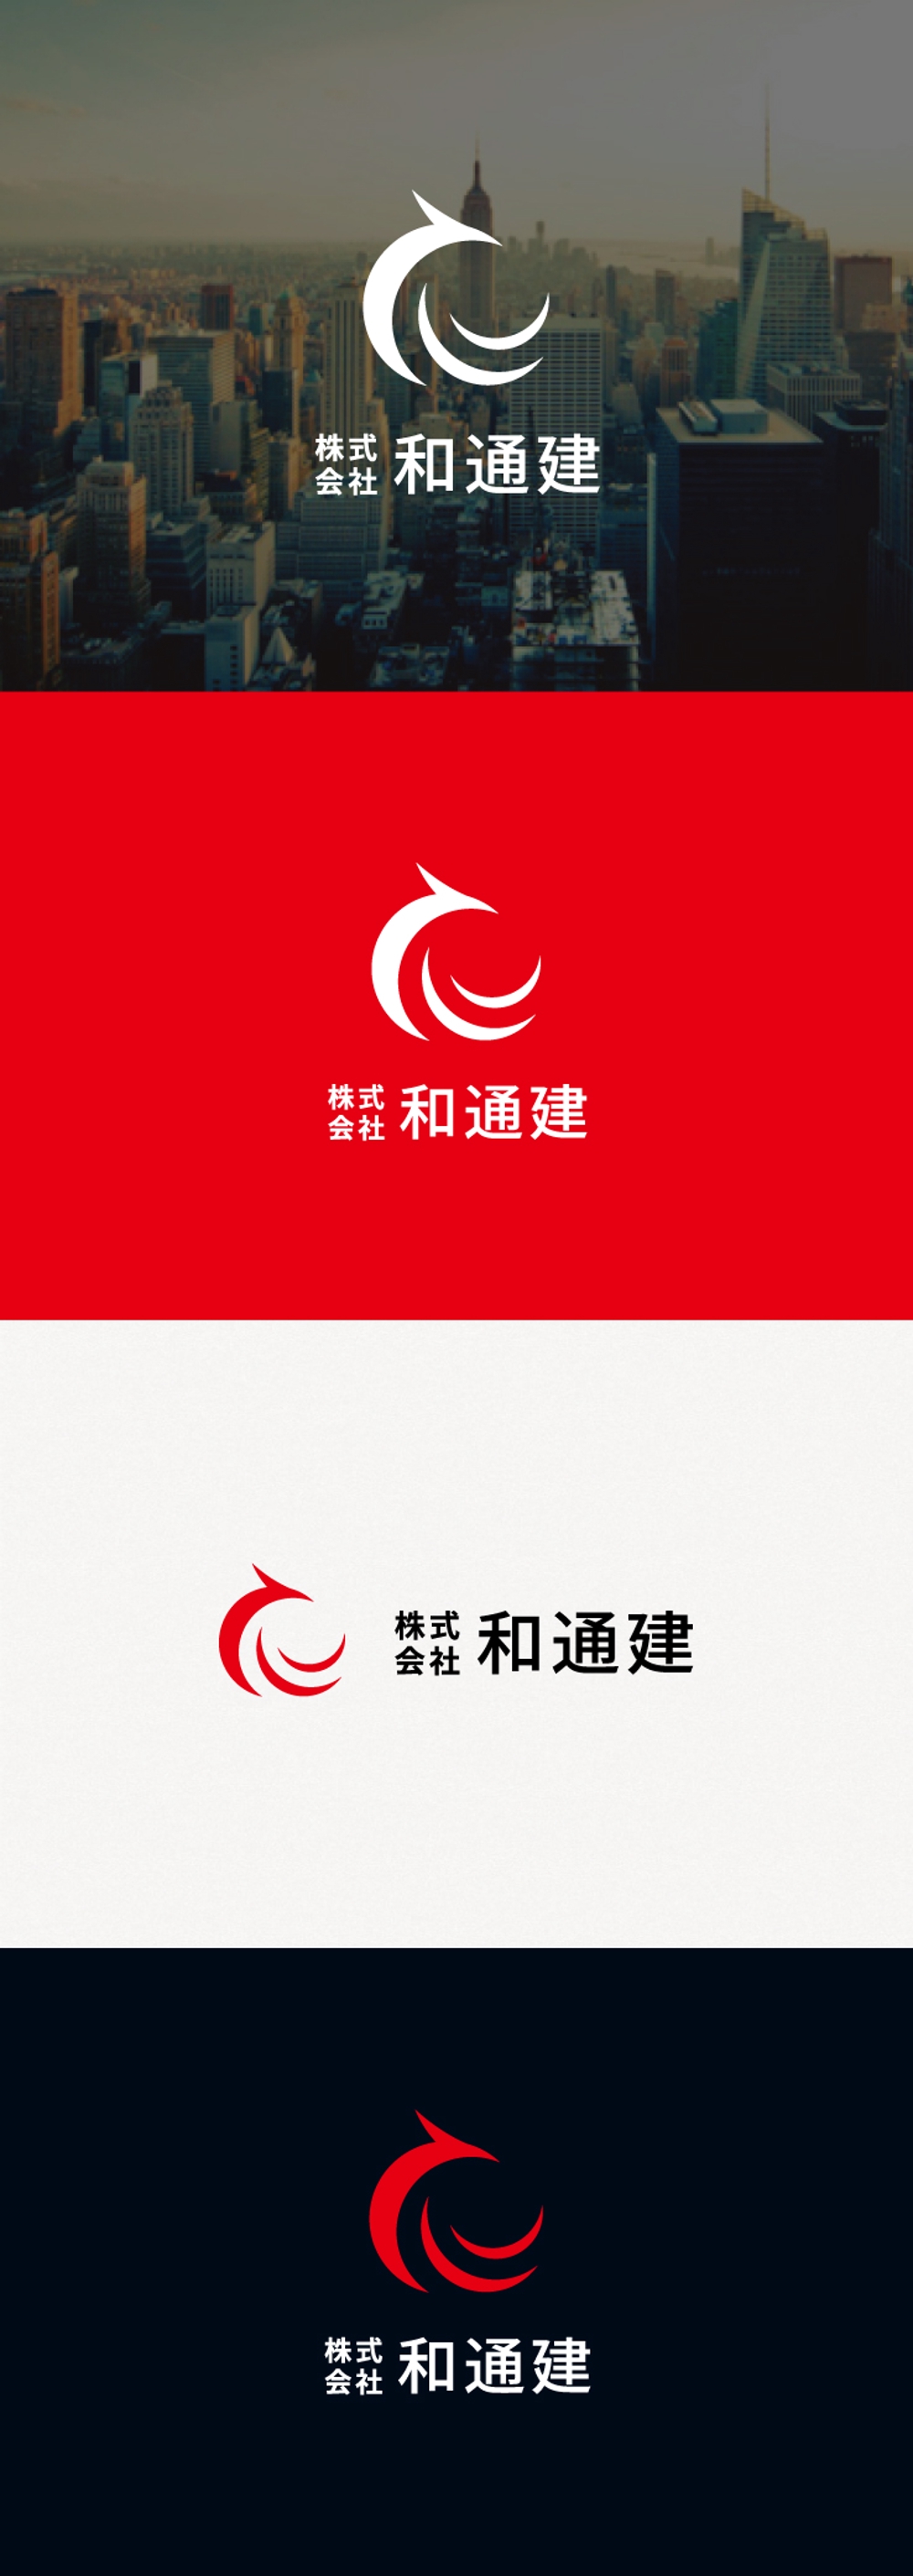 電気通信会社のロゴ